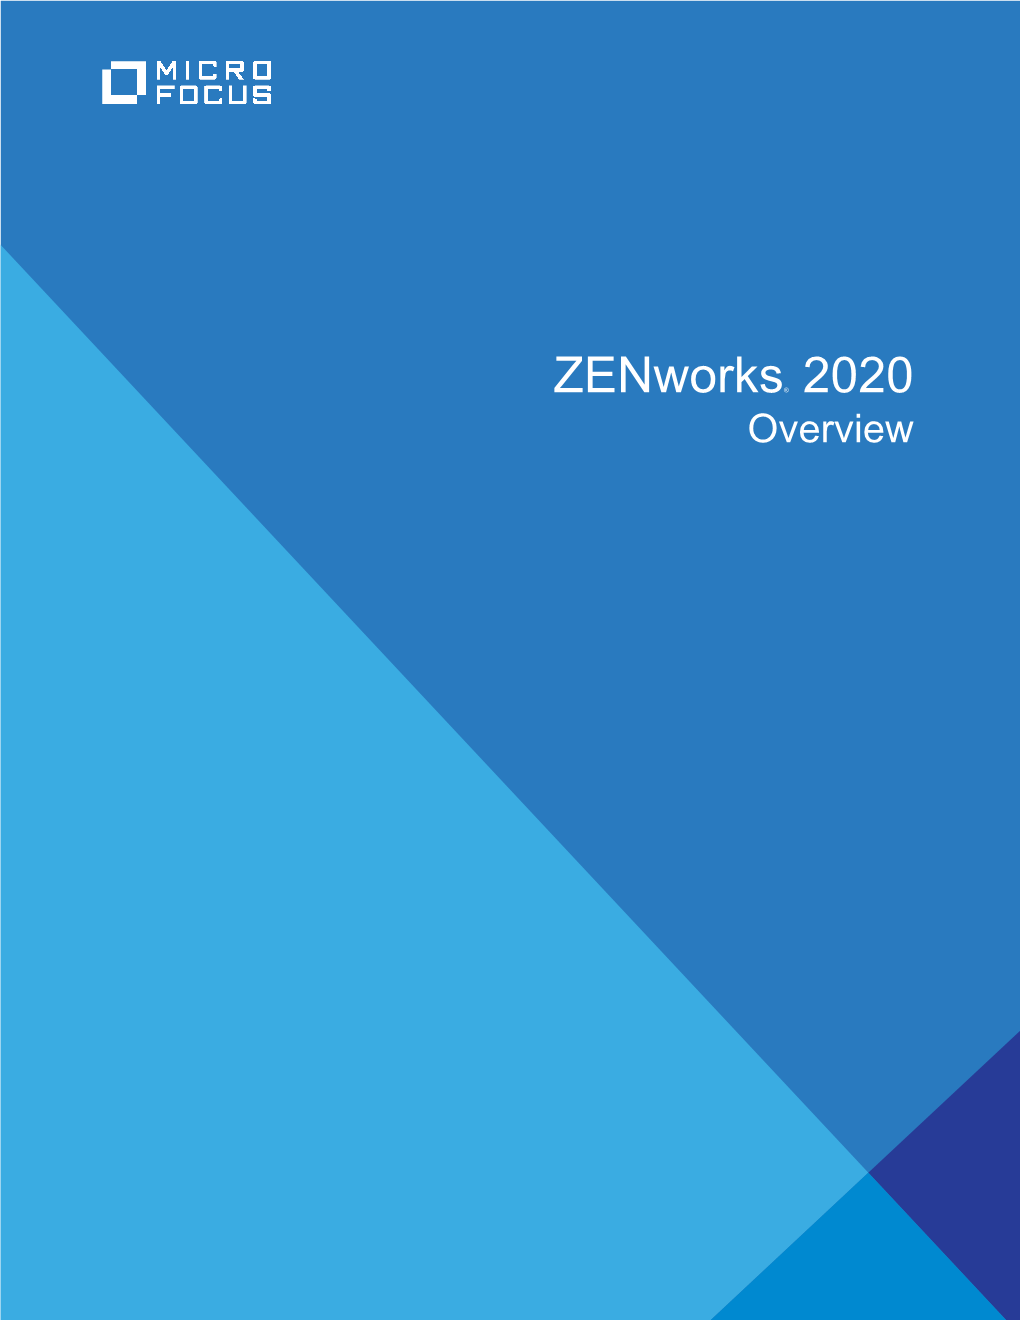 Zenworks Overview